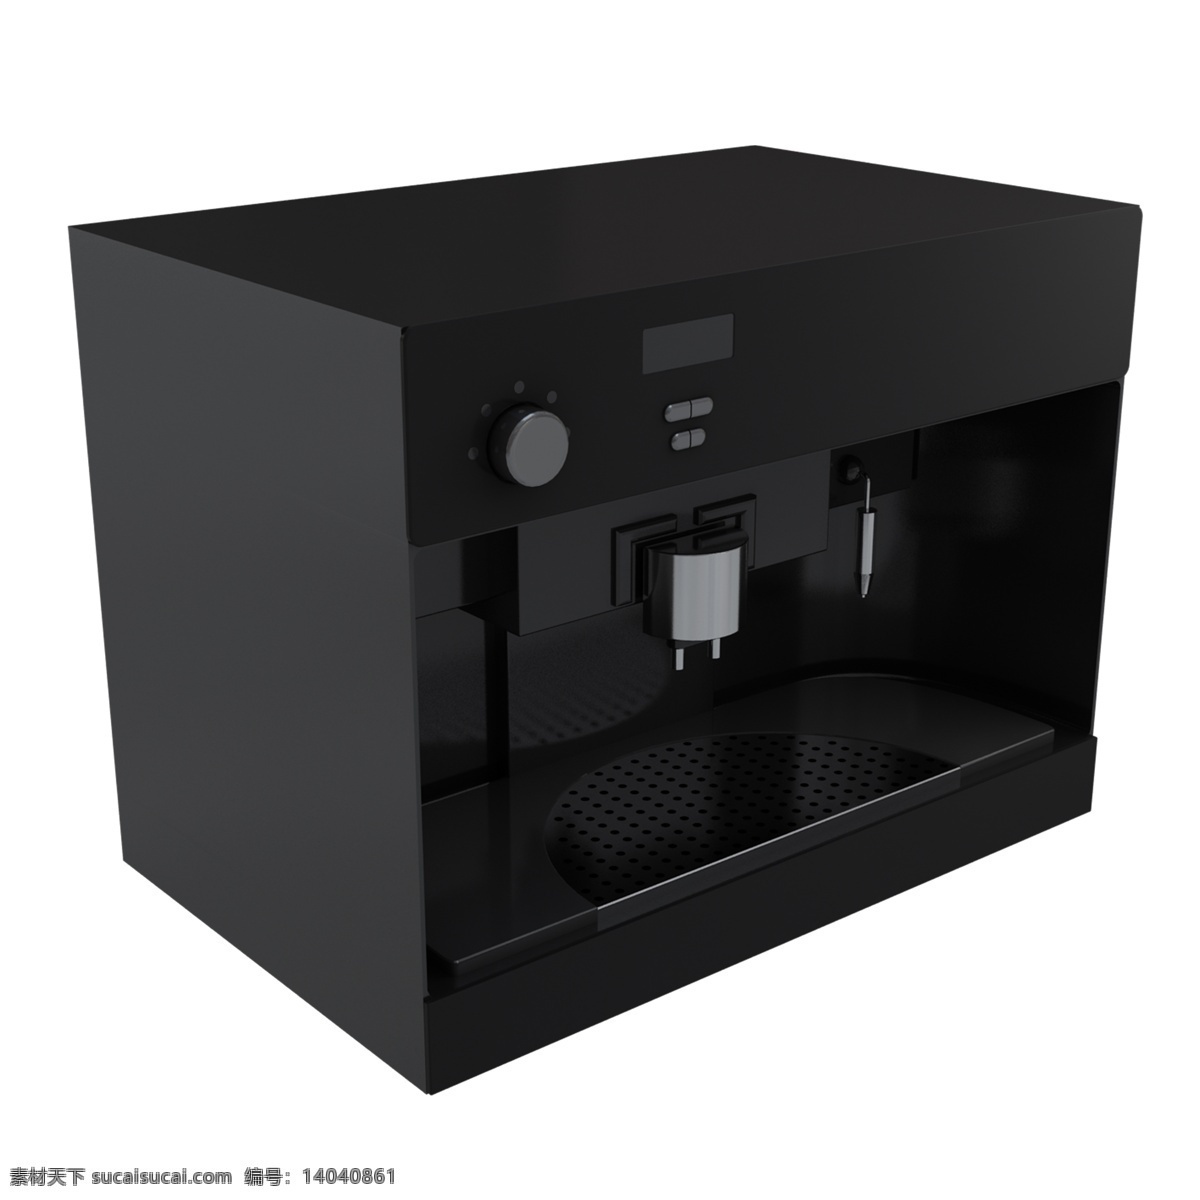 黑色 创意 立体 饮水机 元素 科技 科幻 喝的 液体 味道 开关 健康 饮水 纯水机 机器 咖啡机